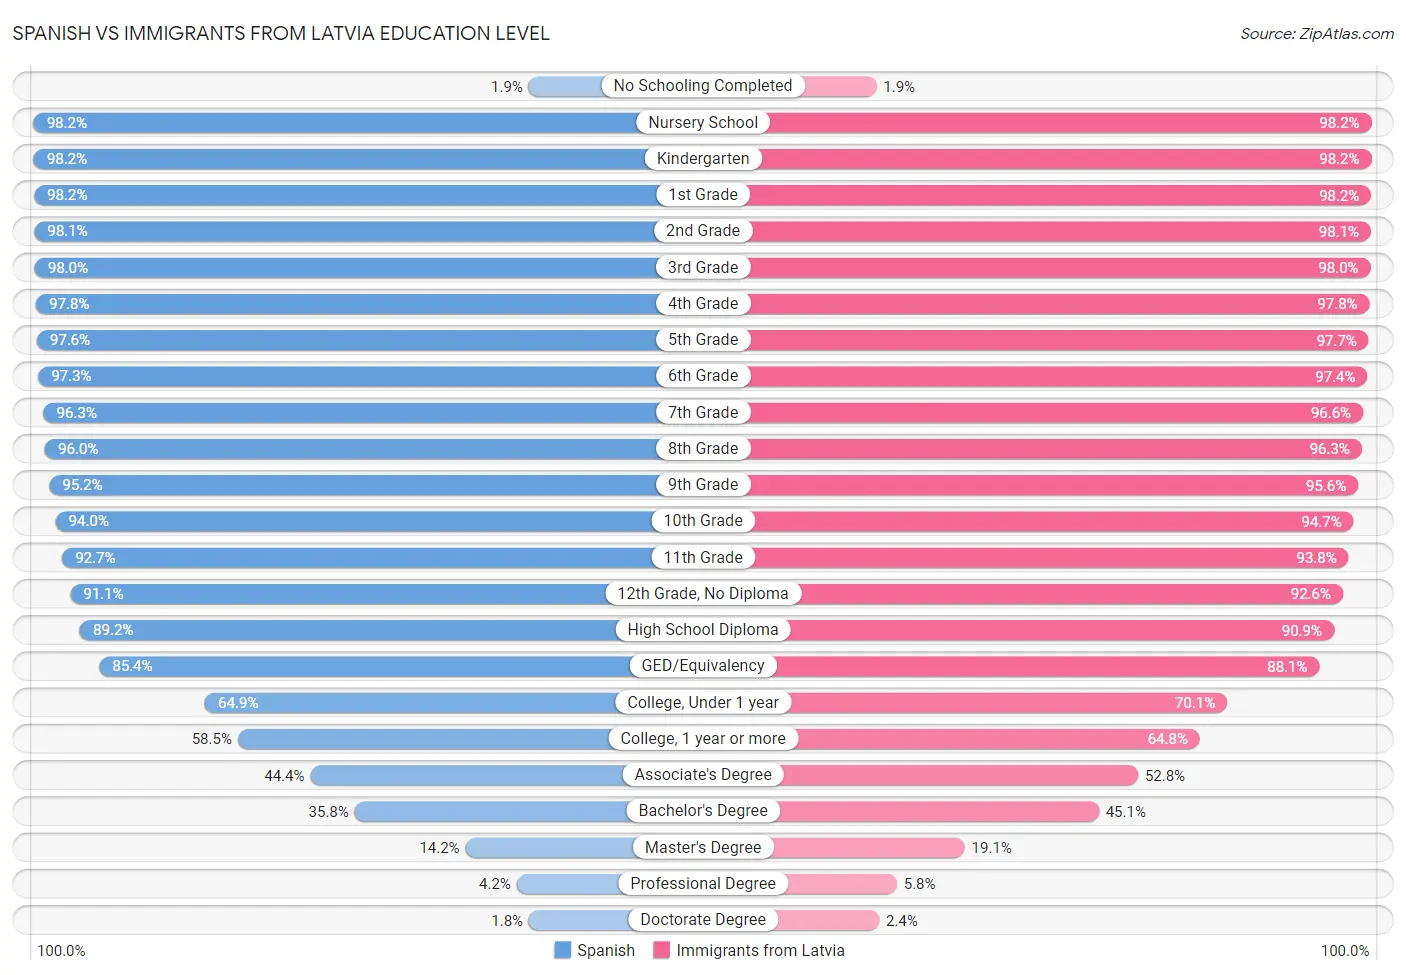 Spanish vs Immigrants from Latvia Education Level